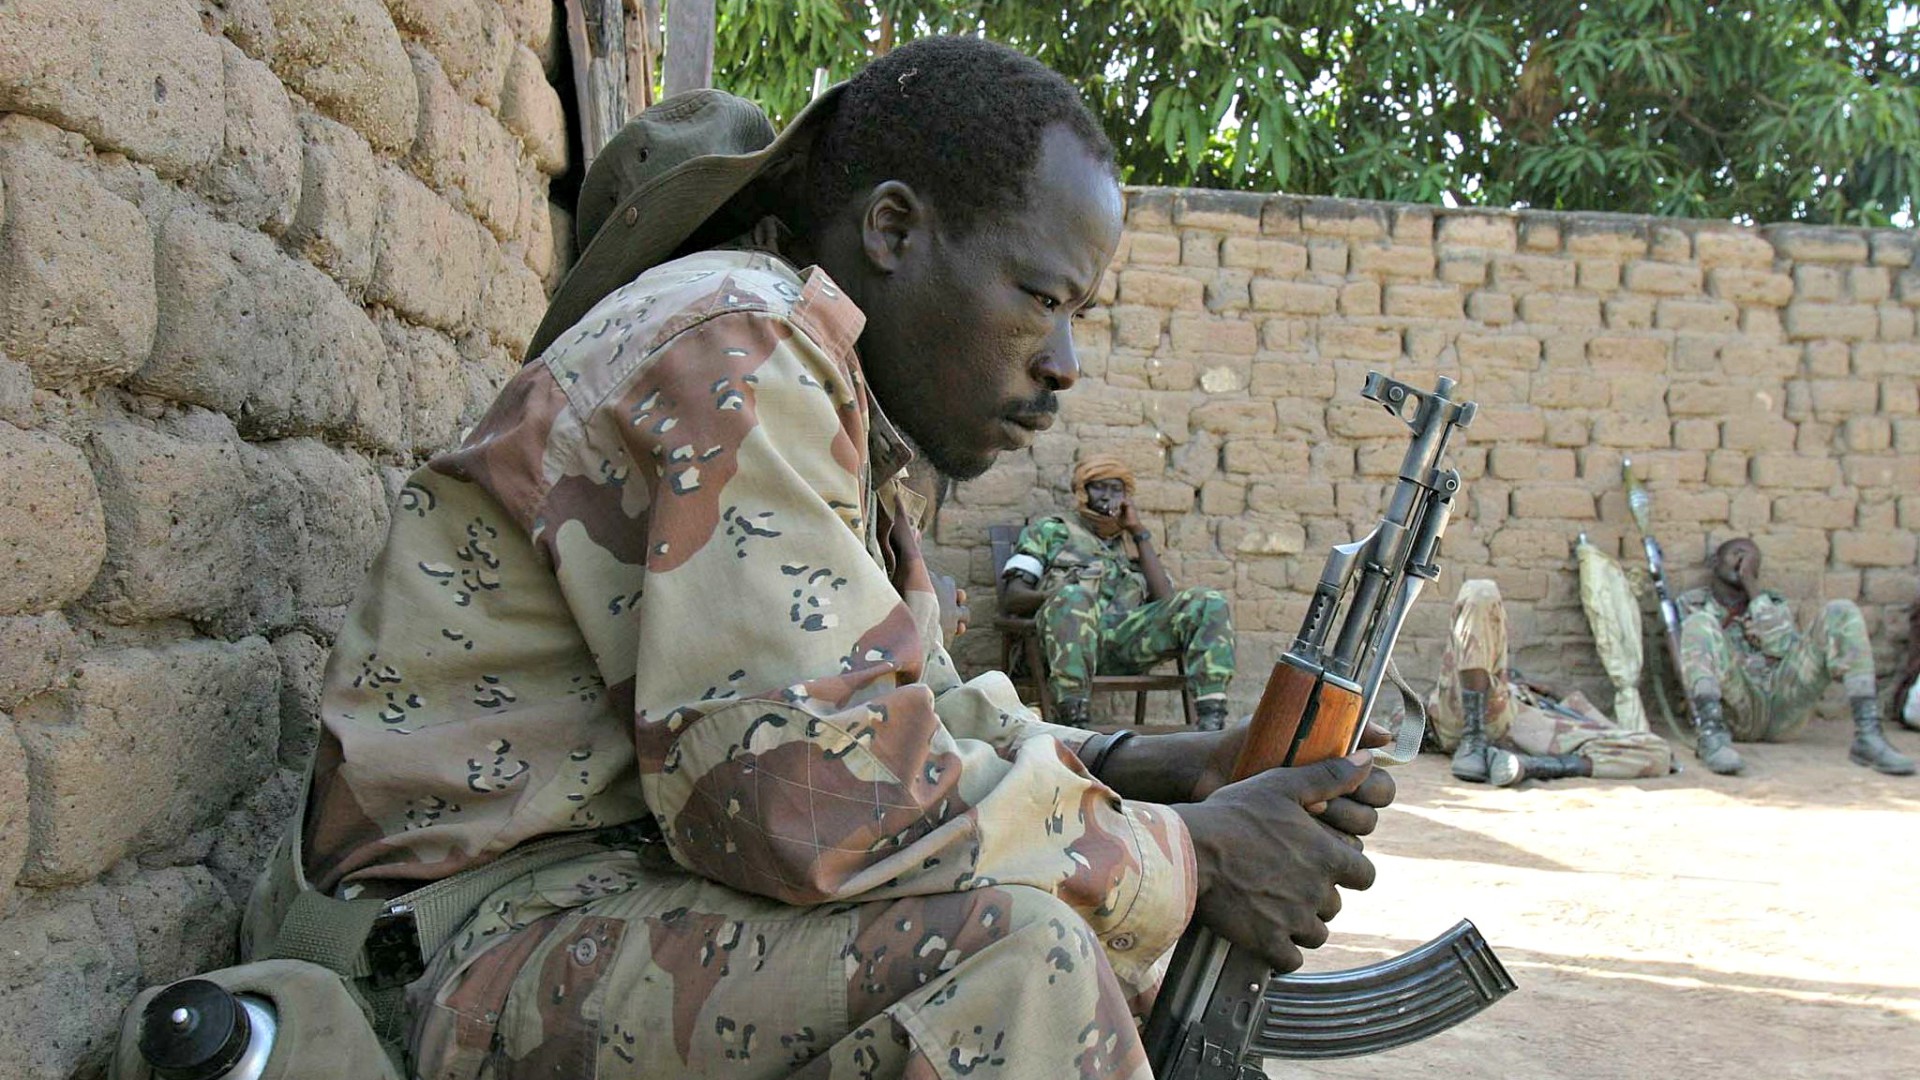 La situation sécuritaire demeure précaire en Centrafrique (Photo:hdptcar/Flickr/CC BY-SA 2.0)